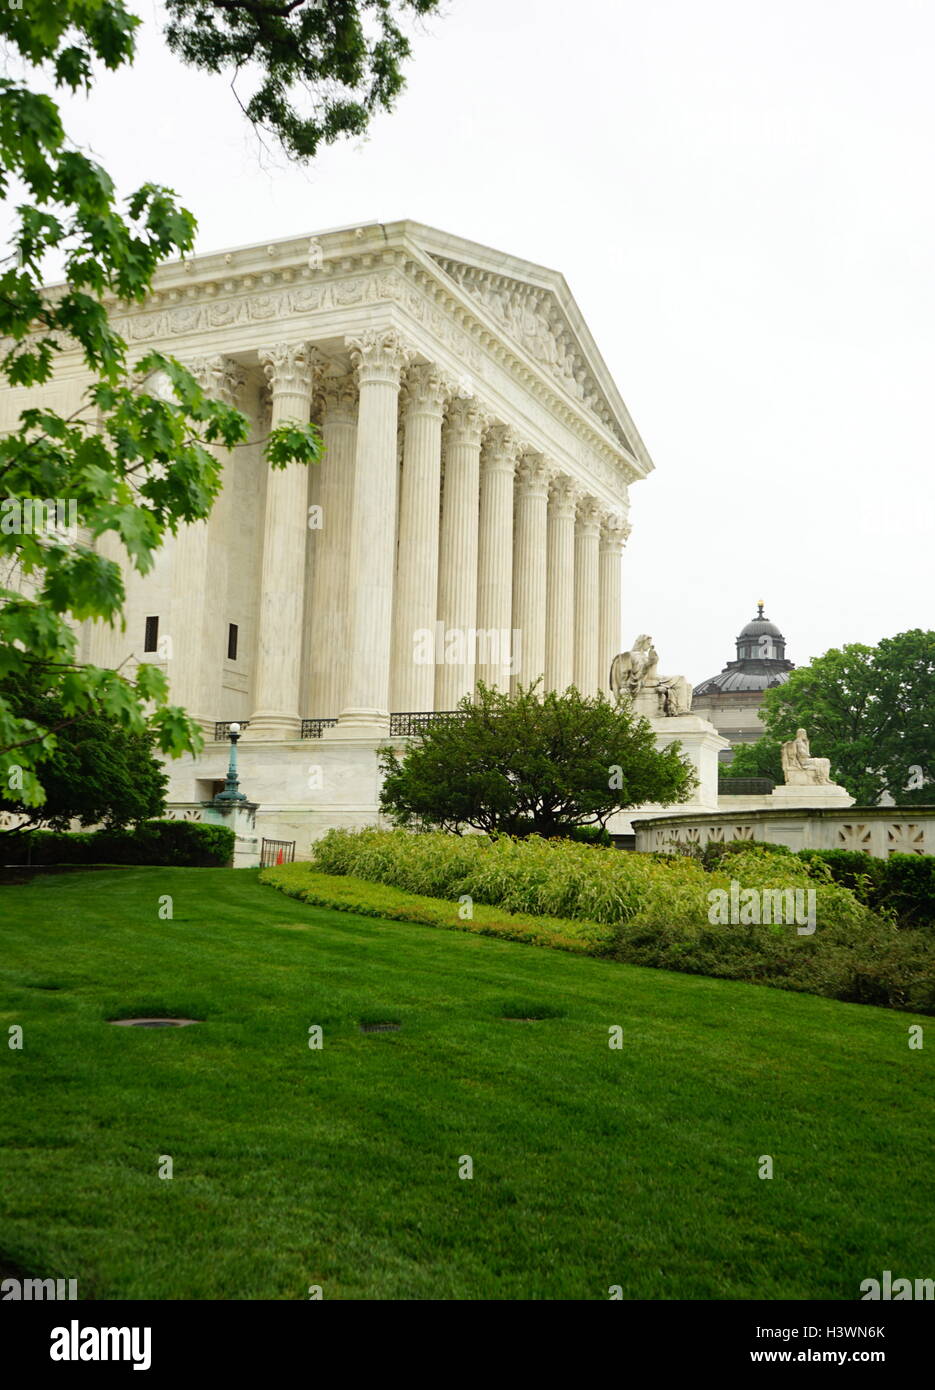 Fassade des Obersten Gerichtshofs der Vereinigten Staaten in Washington D.C. vom 21. Jahrhundert Stockfoto